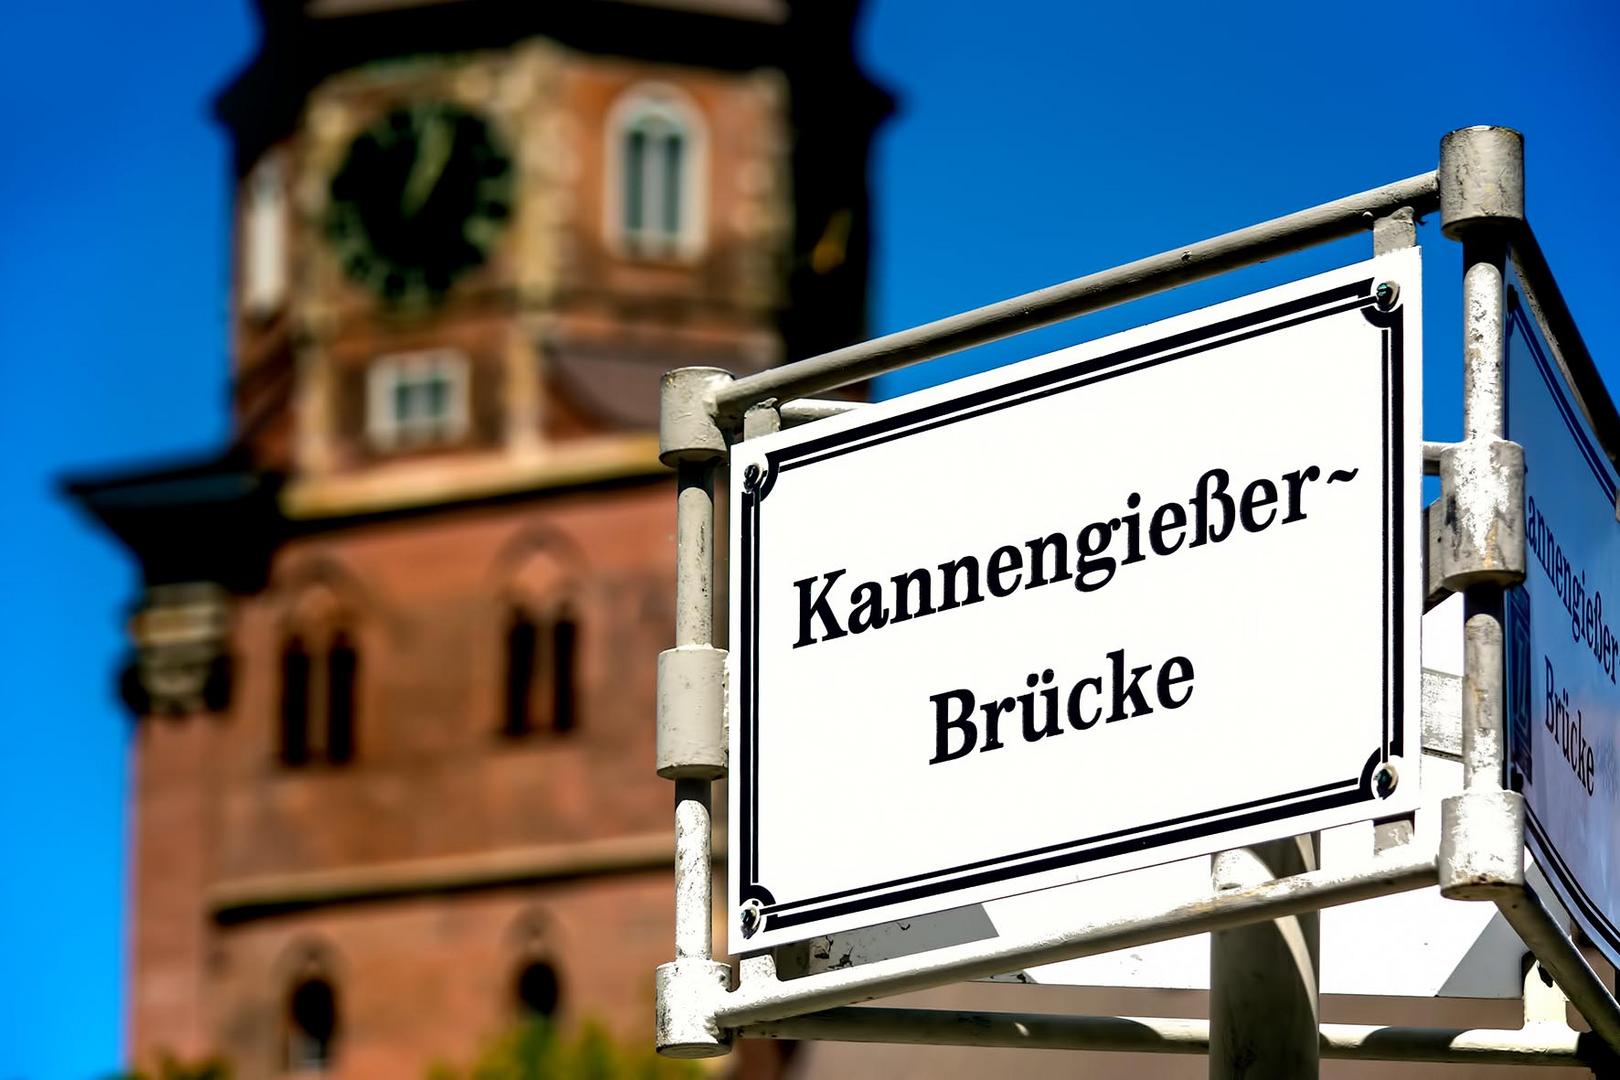 Kannengießerbrück